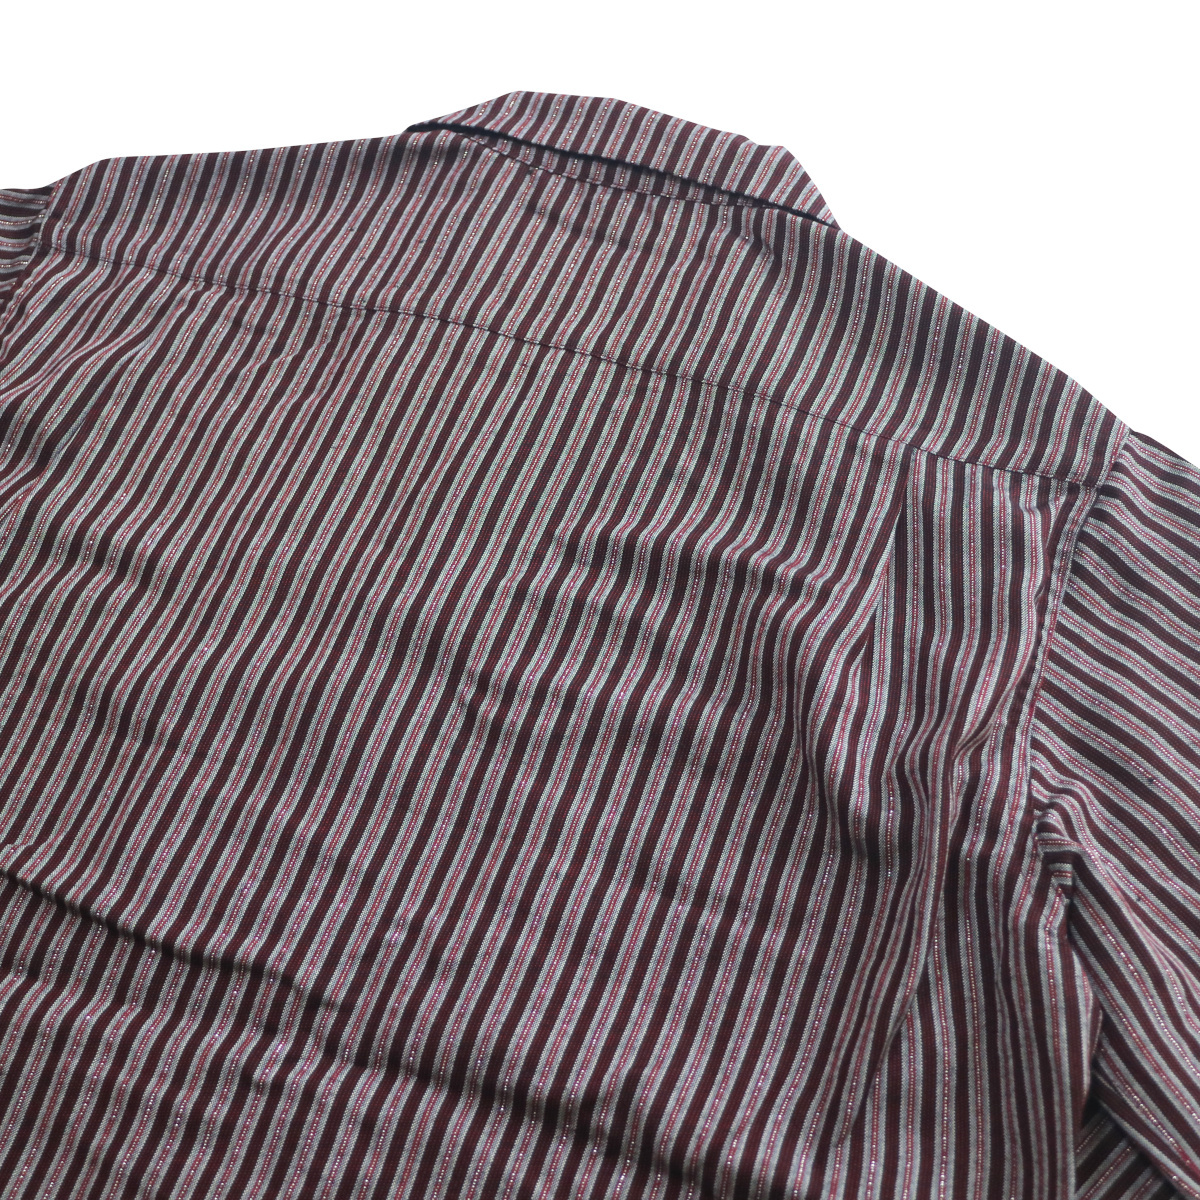 シャツ 長袖 メンズ ロカビリーファッション Lame Stripe Italian Shirts サイズL ブランド SAVOY CLOTHING_画像5